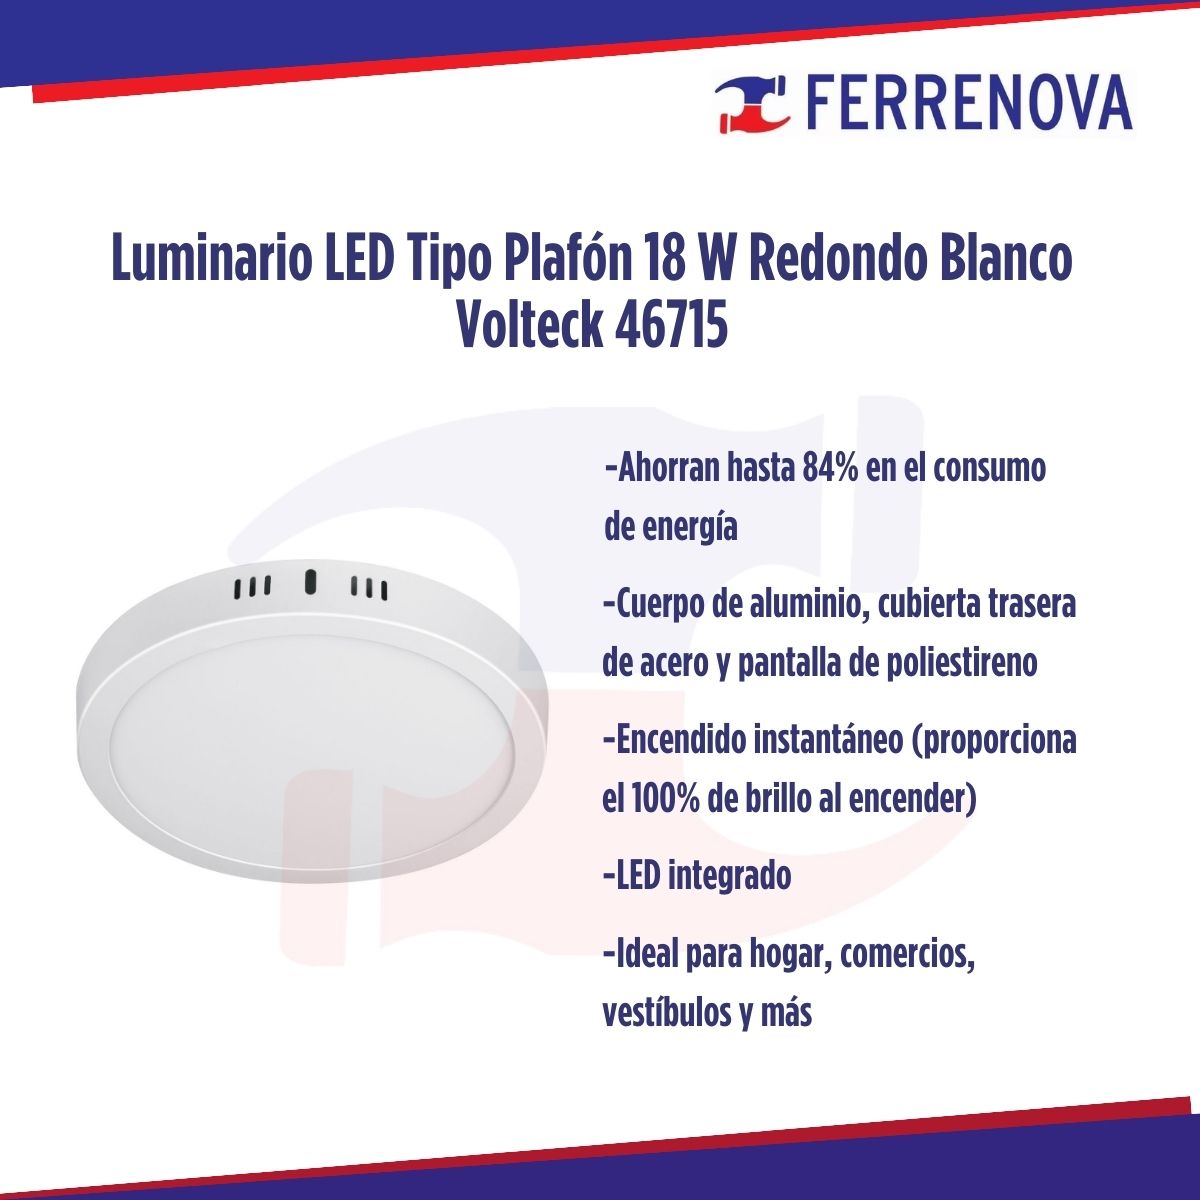 Luminario LED Tipo Plafón 18 W Redondo Blanco Volteck 46715